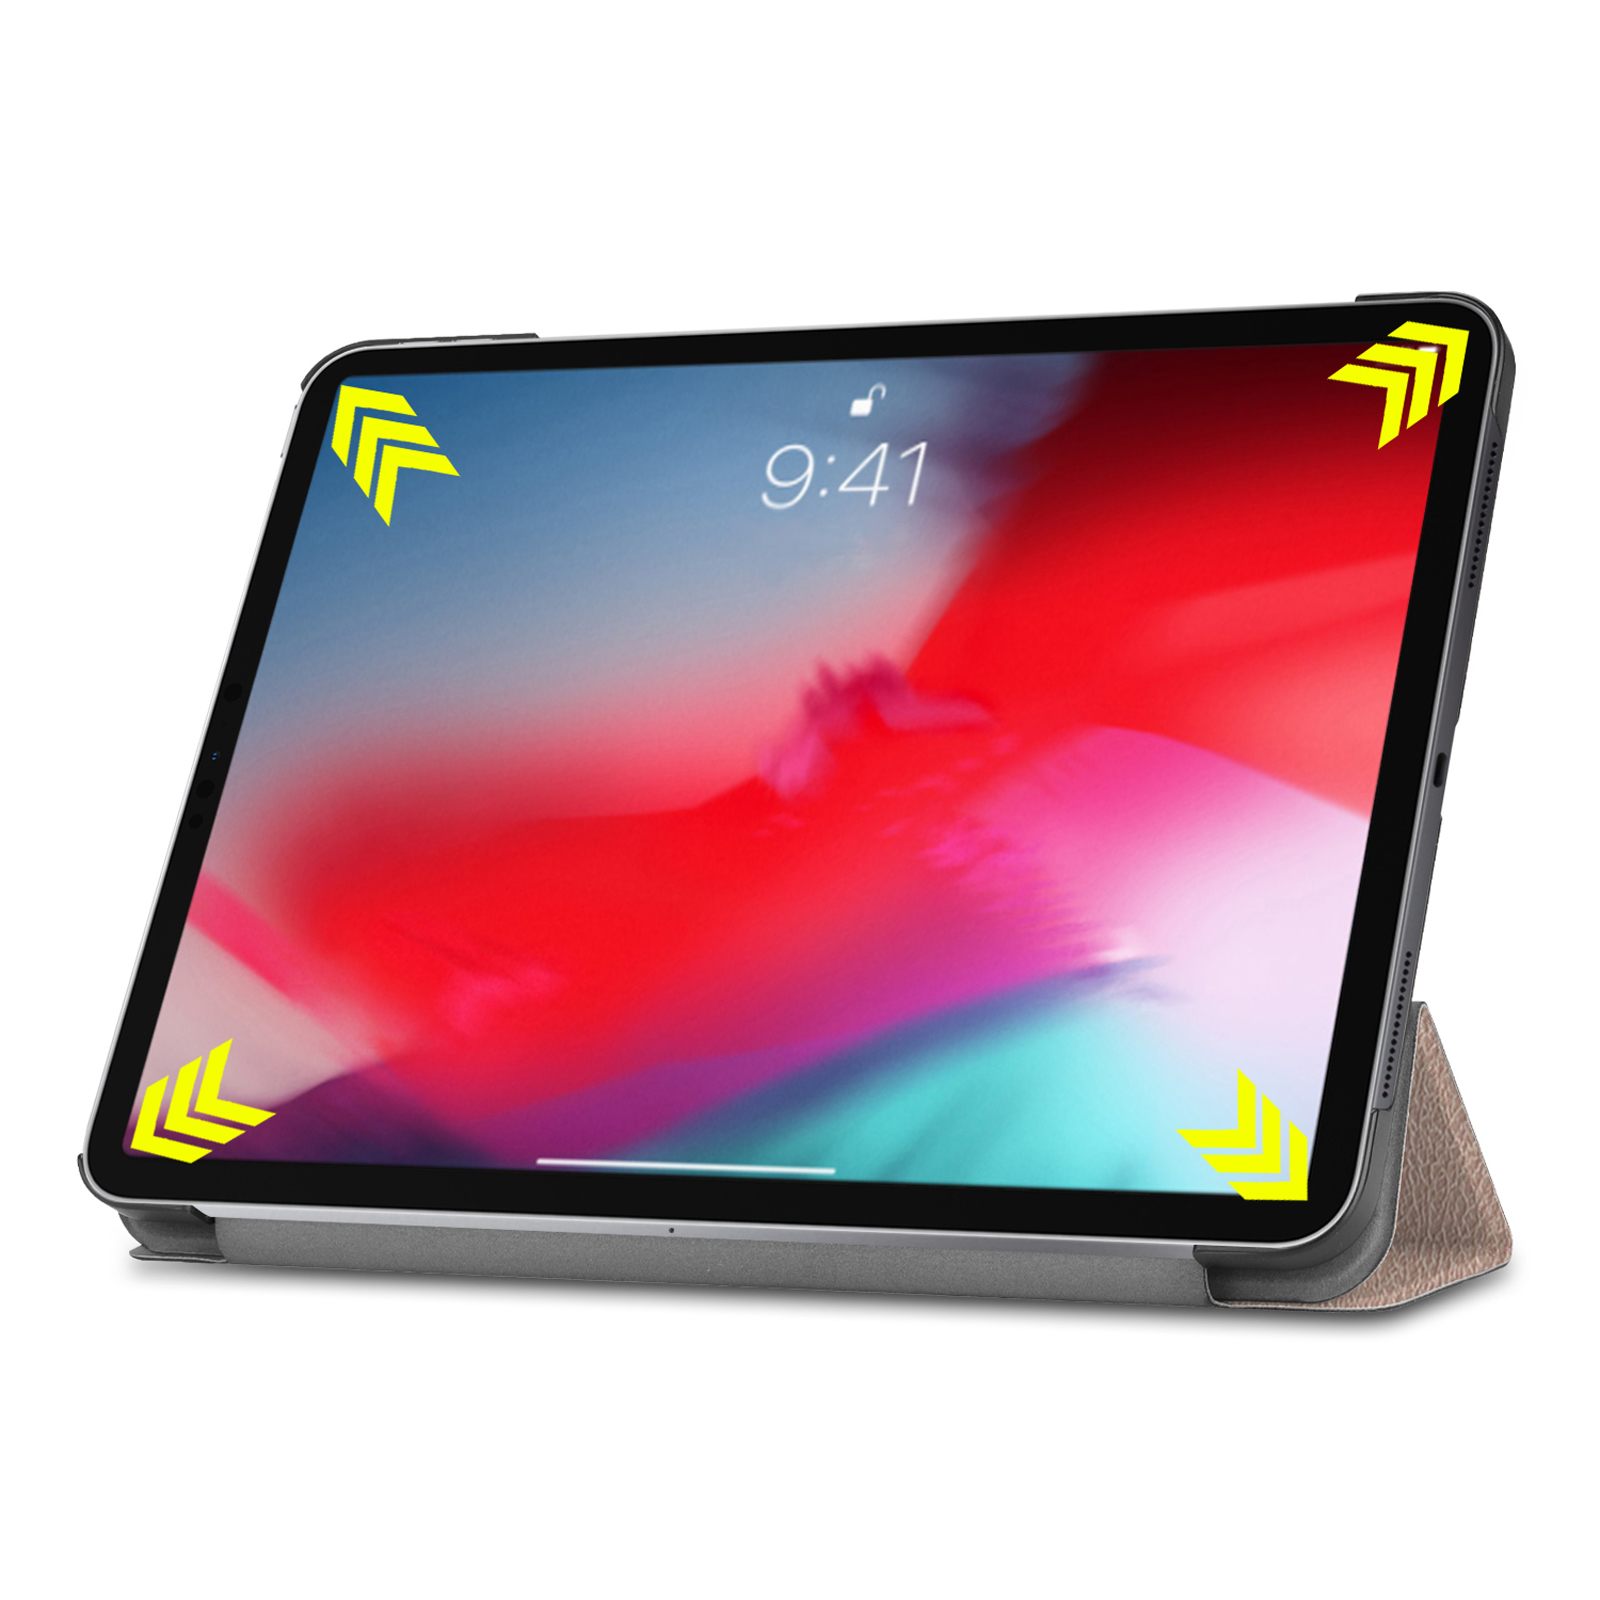 Apple LOBWERK Bookcover Hülle 11 Pro 2018 iPad Zoll bronze Kunstleder, 11 für Schutzhülle